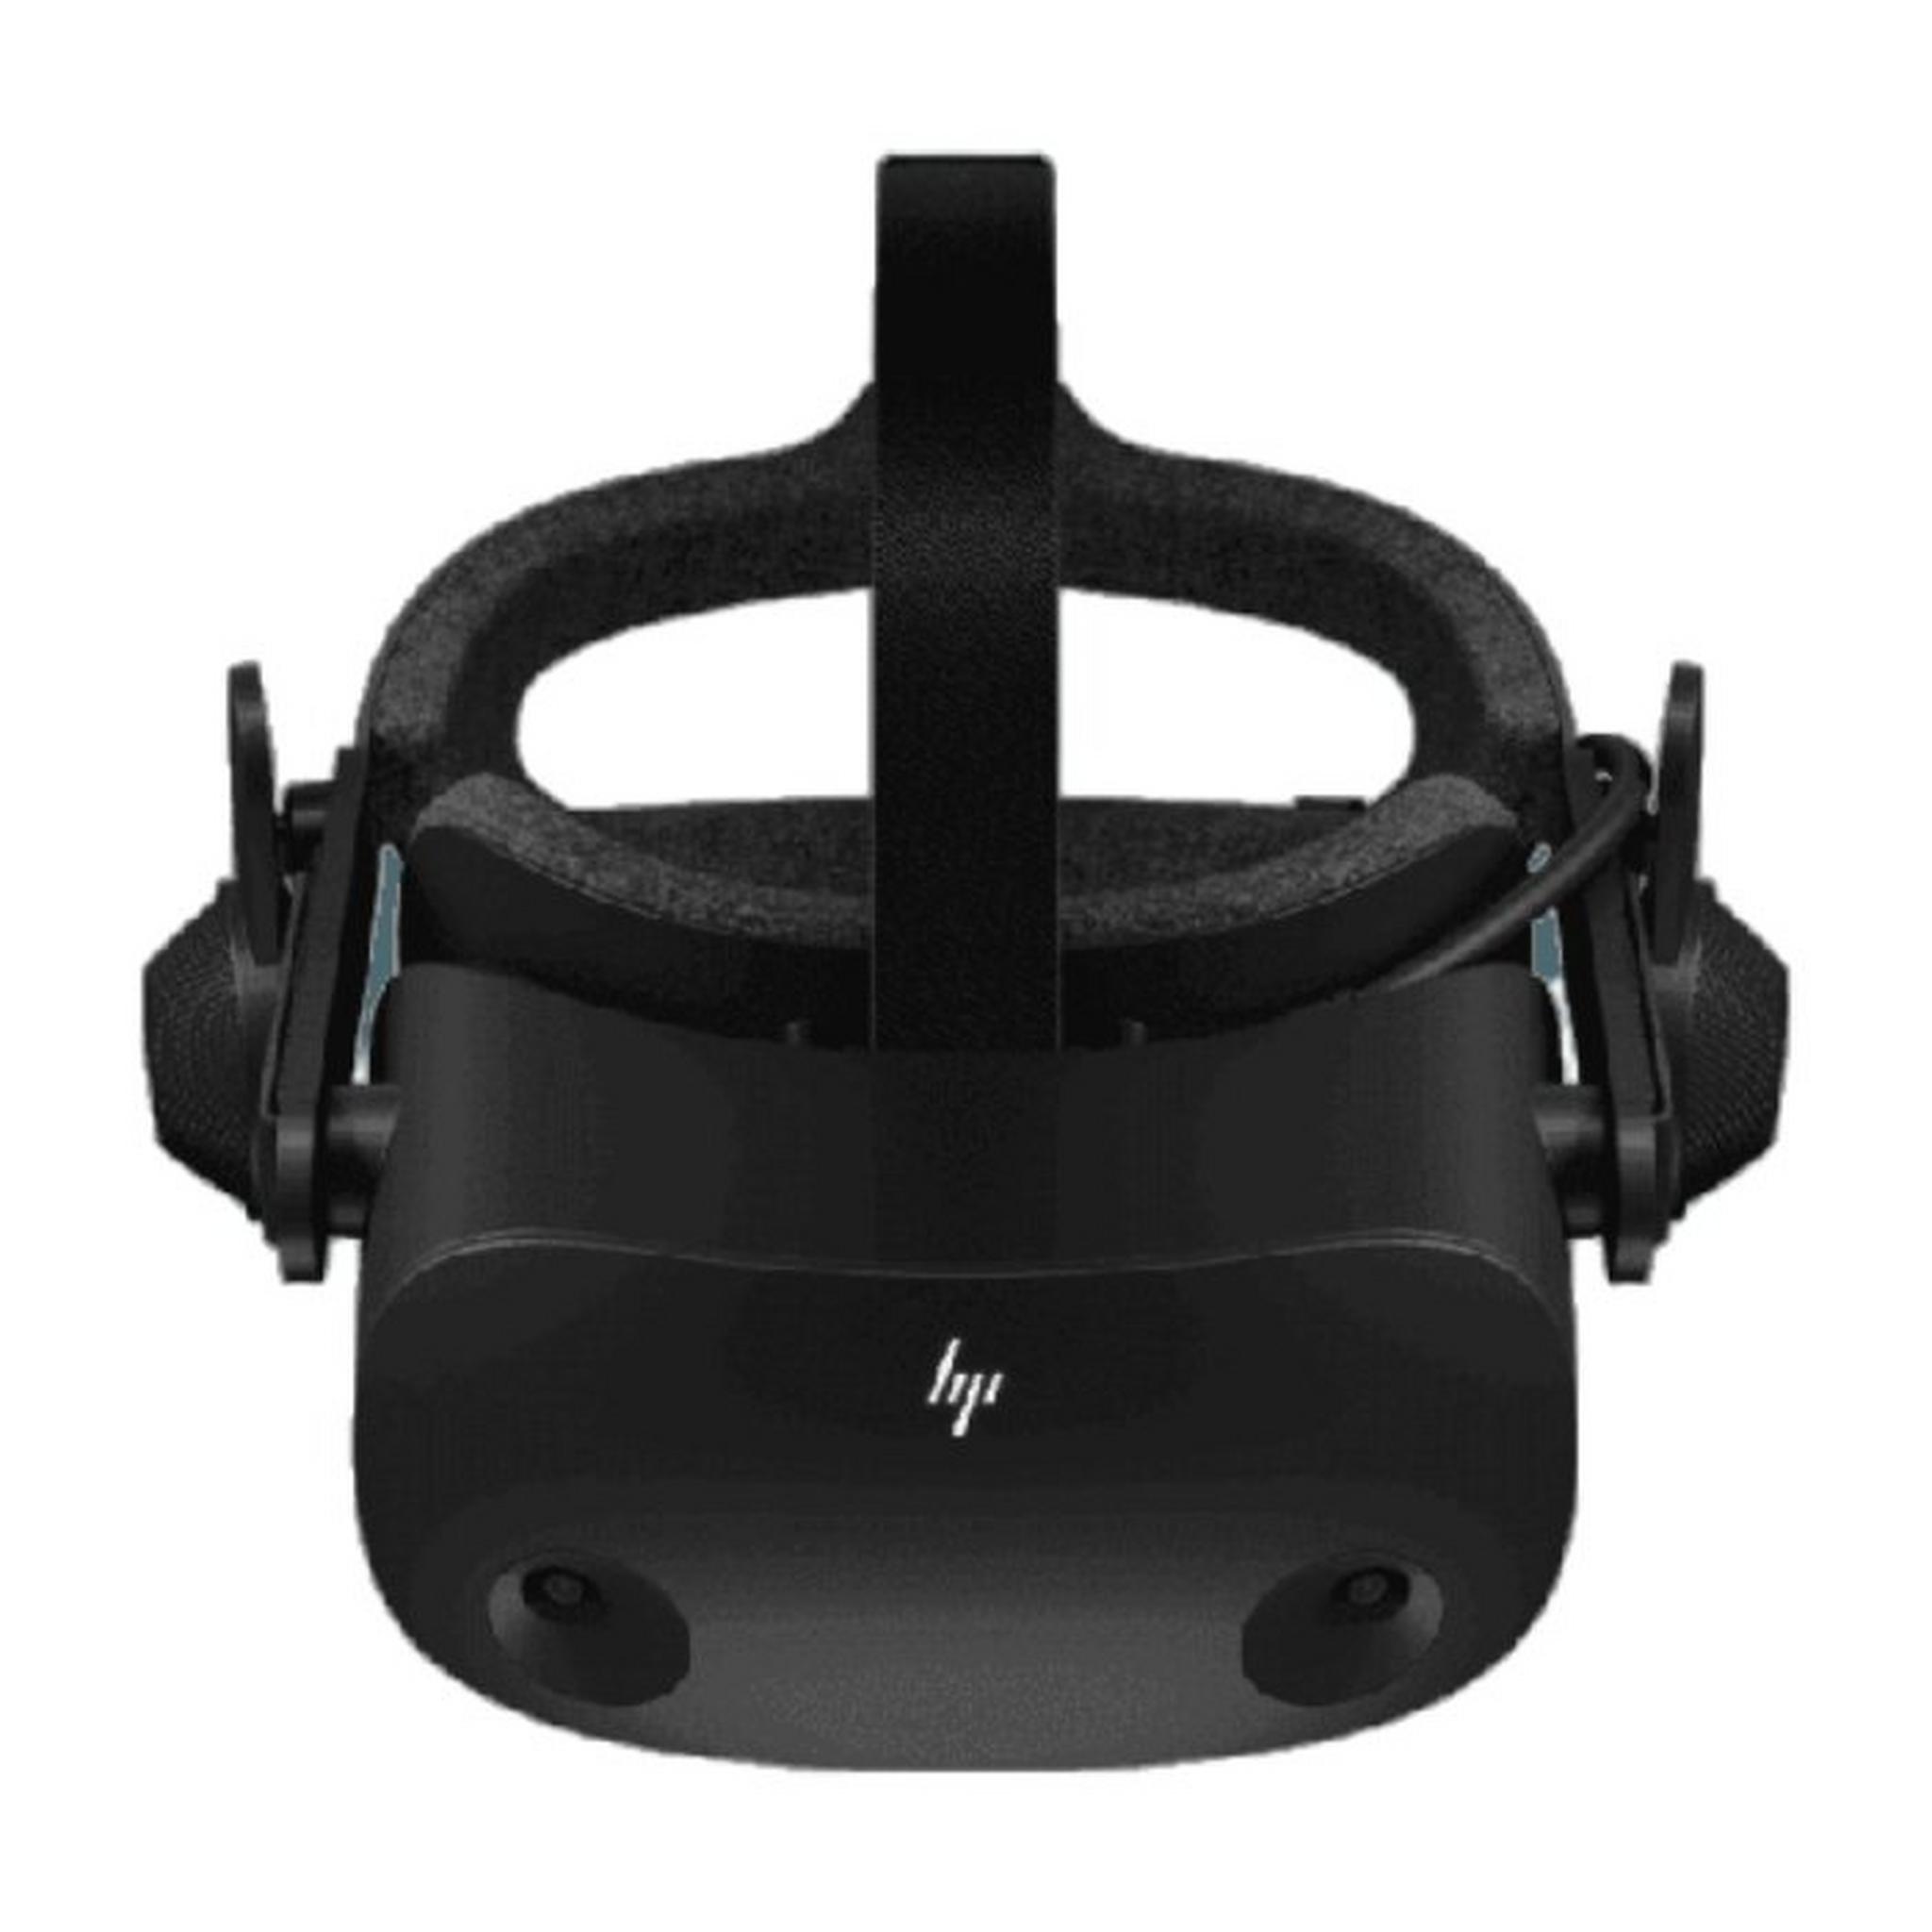 نظارة الواقع الافتراضي ريفيرب جي 2 من اتش بي